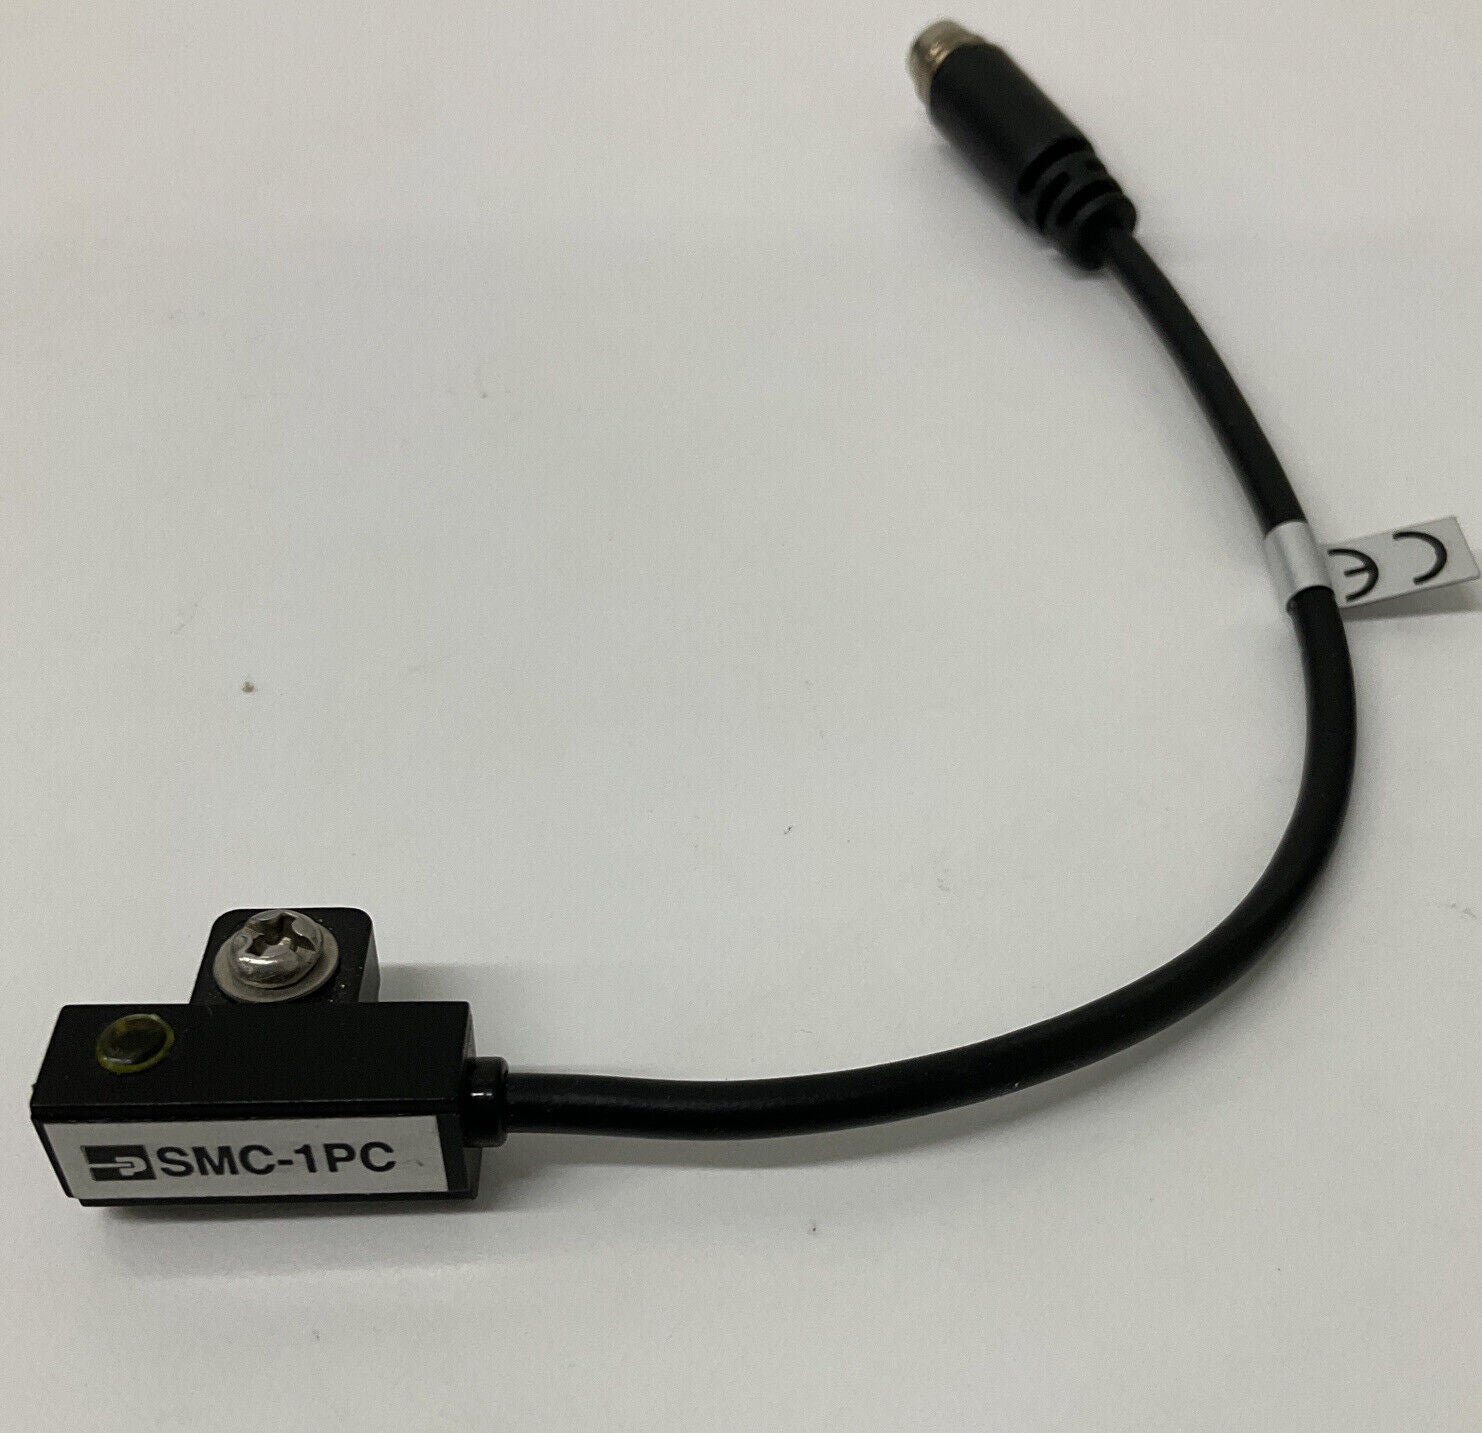 Parker SMC-1PC  PNP Hall Effect Sensor 150mm (RE201)